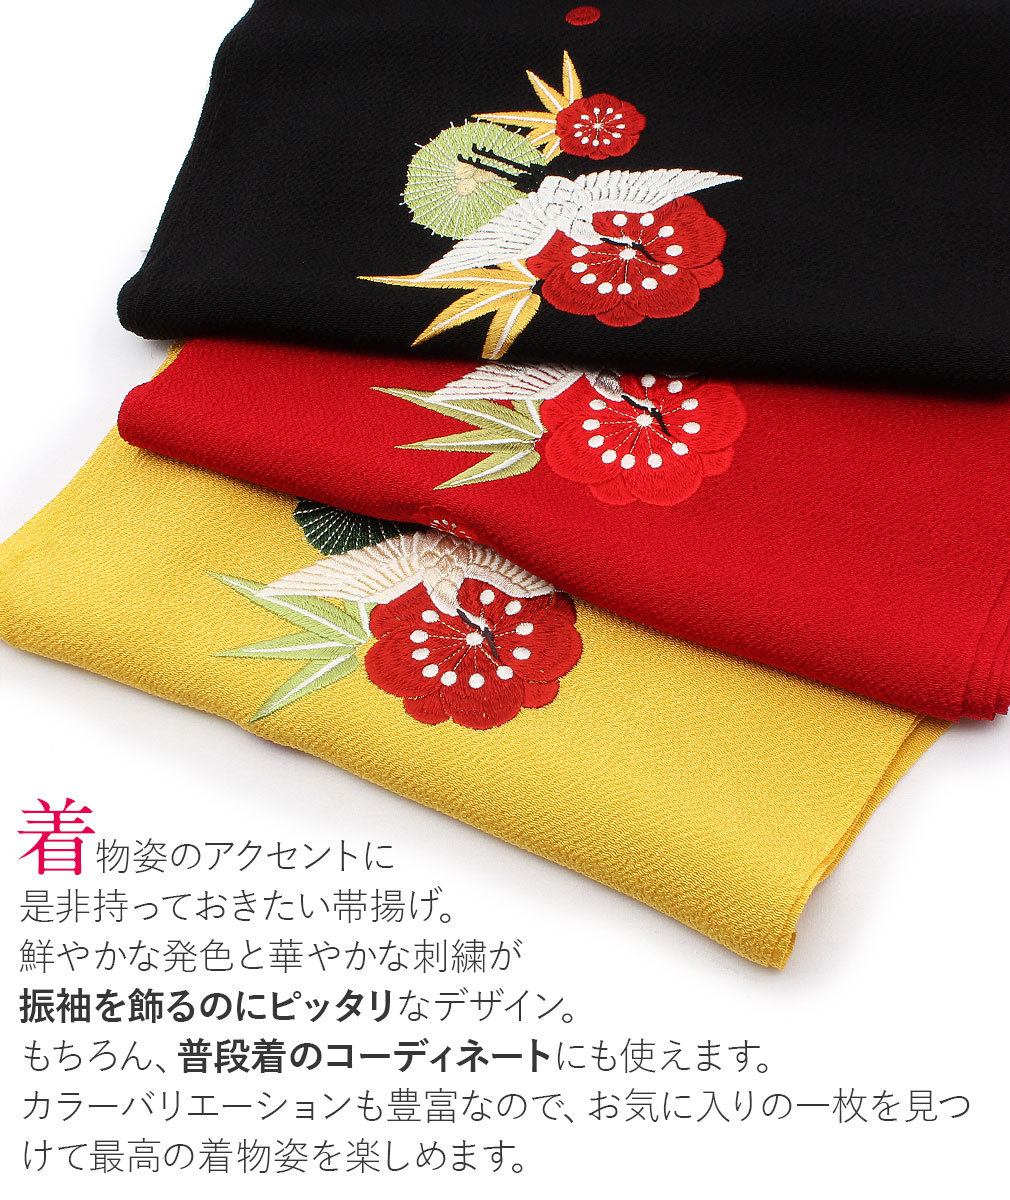 帯揚げ 振袖 成人式 振袖帯揚げ 振袖用 振袖用帯揚げ 刺繍 正絹 黒 赤 黄 ベージュ